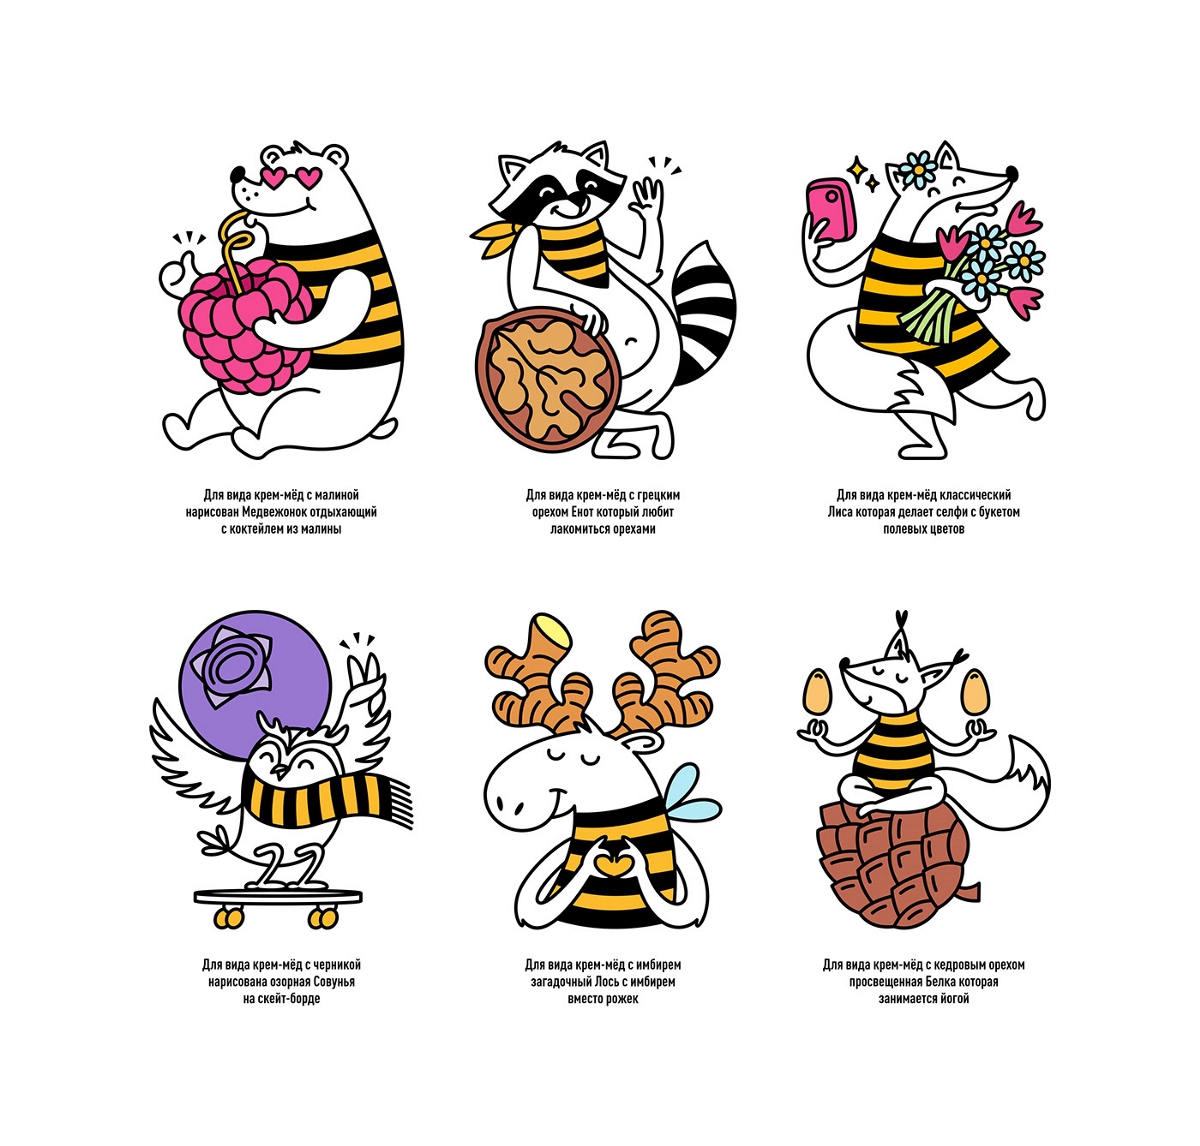 趣味化的蜂蜜包装设计 | 趣味 插画